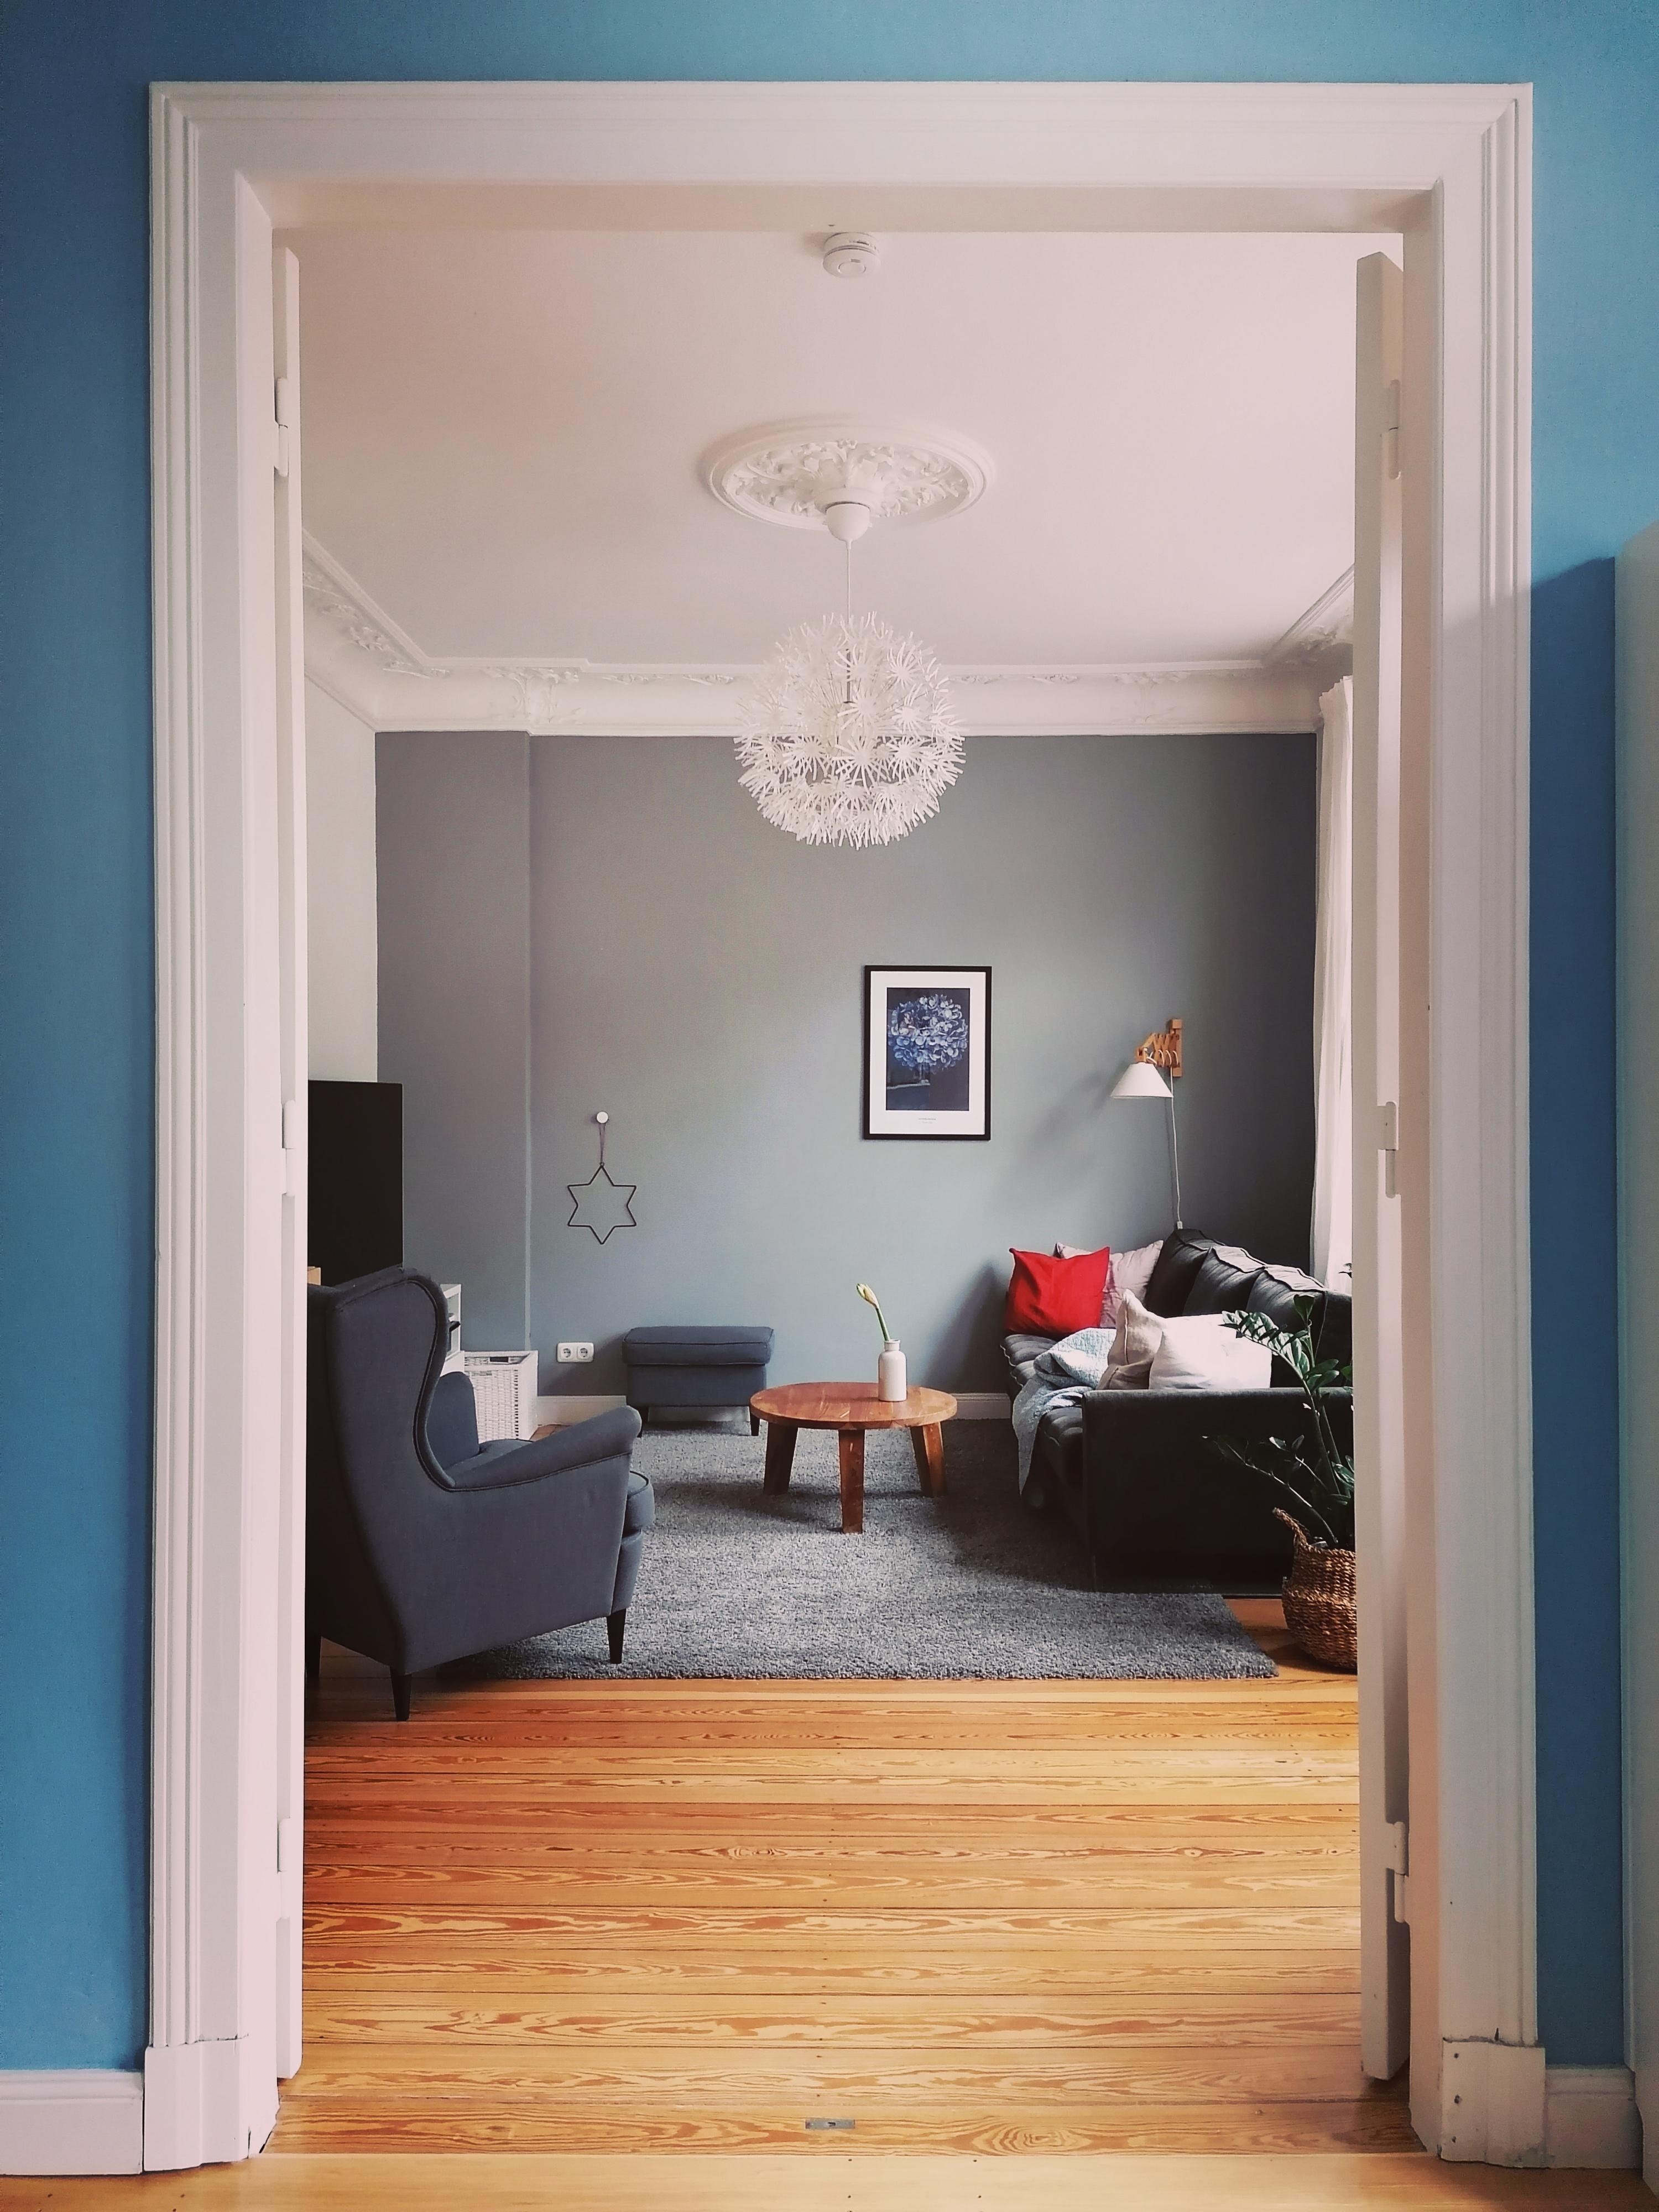 ⭐
#durchblick #wohnzimmer #weihnachten #weihnachtsdeko #blau #couch #flügeltür 